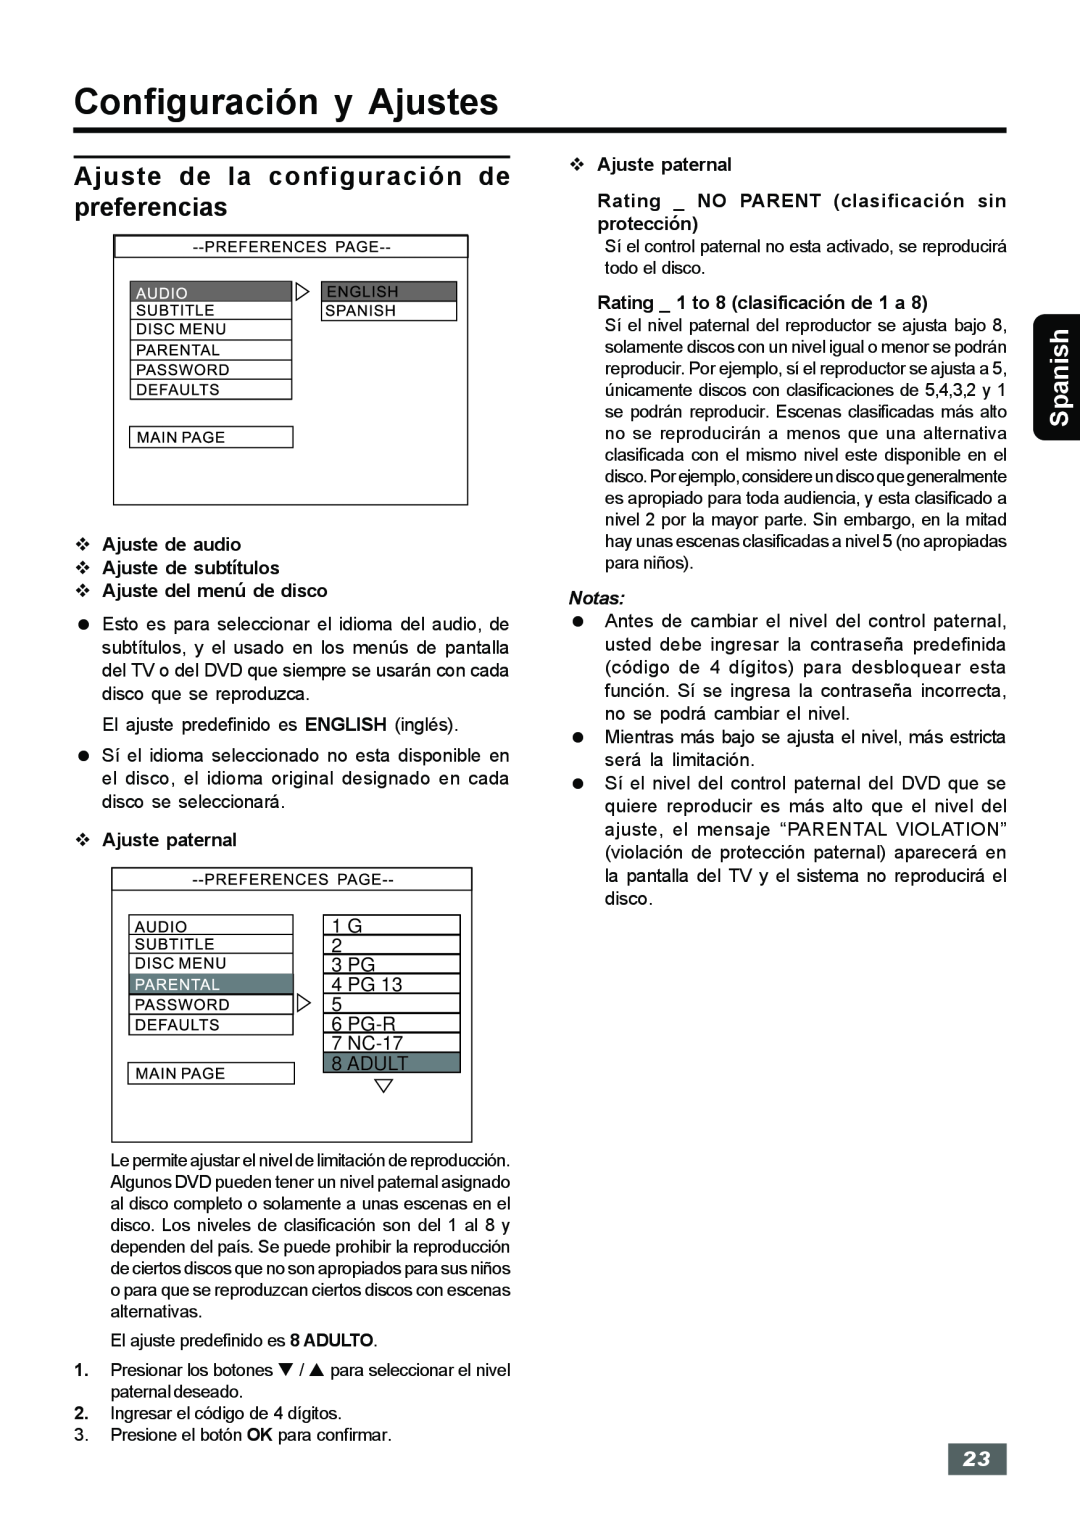 Insignia IS-HTIB102731 owner manual Ajuste de la configuración de, preferencias, Configuración y Ajustes, Spanish 